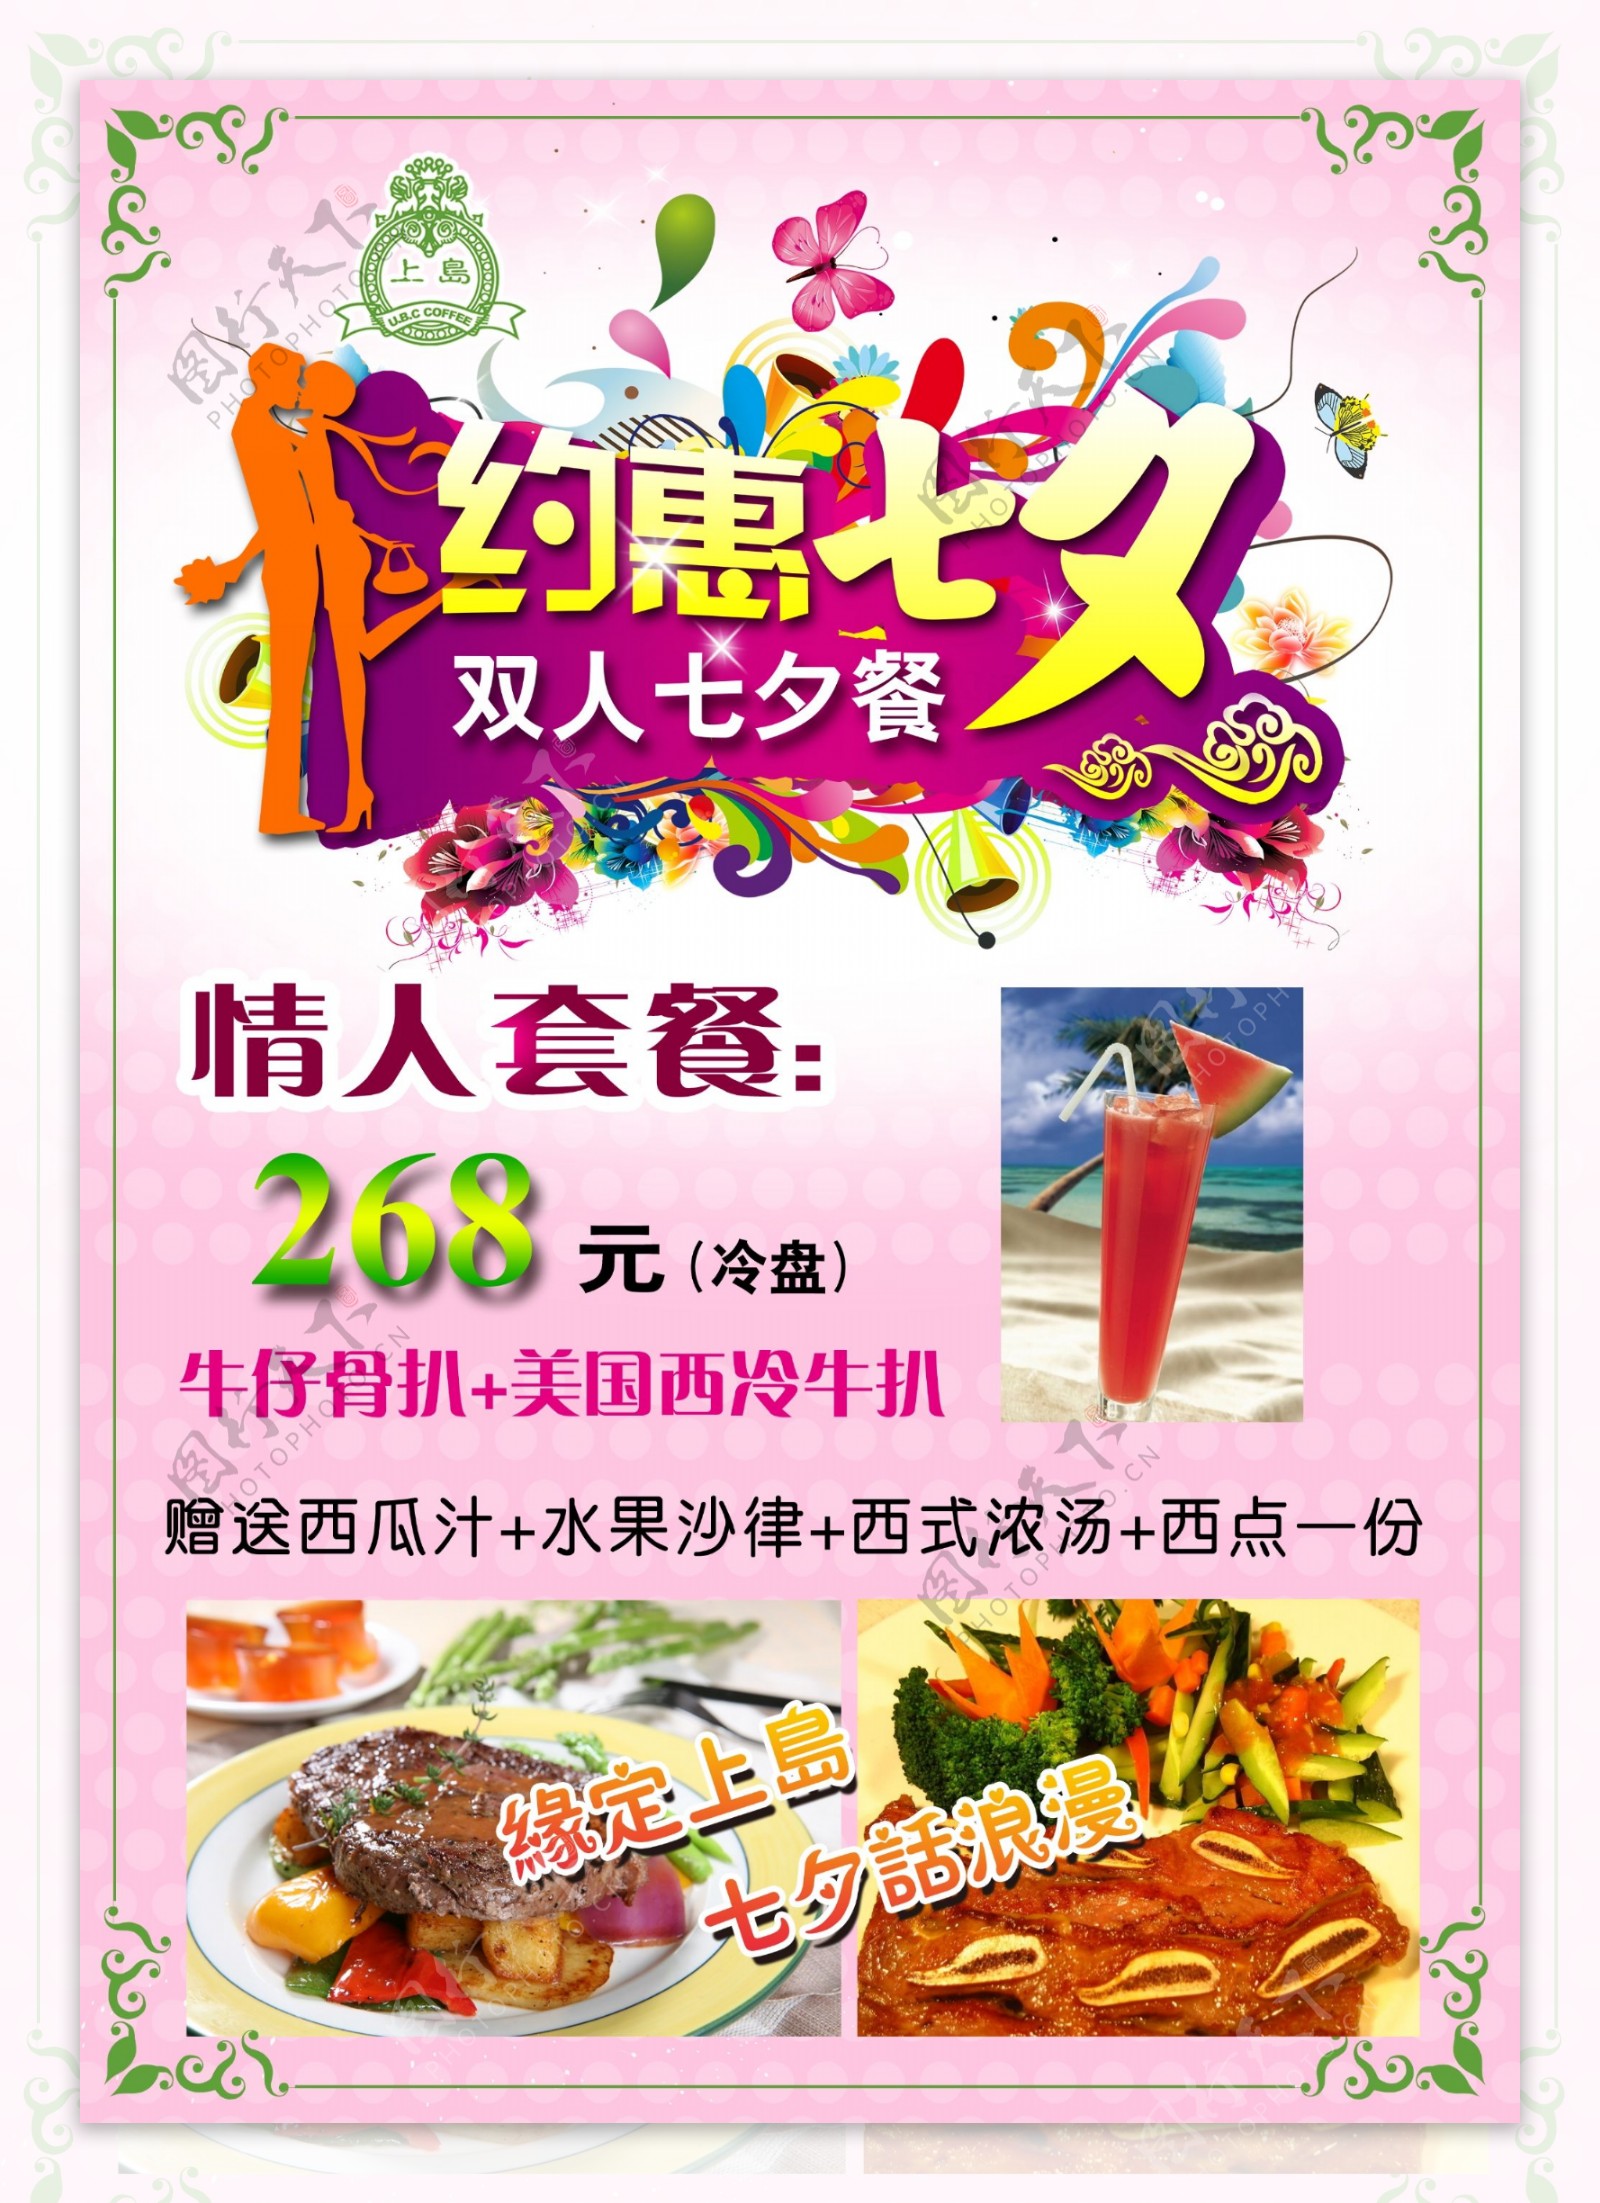 七夕情人节餐厅海报